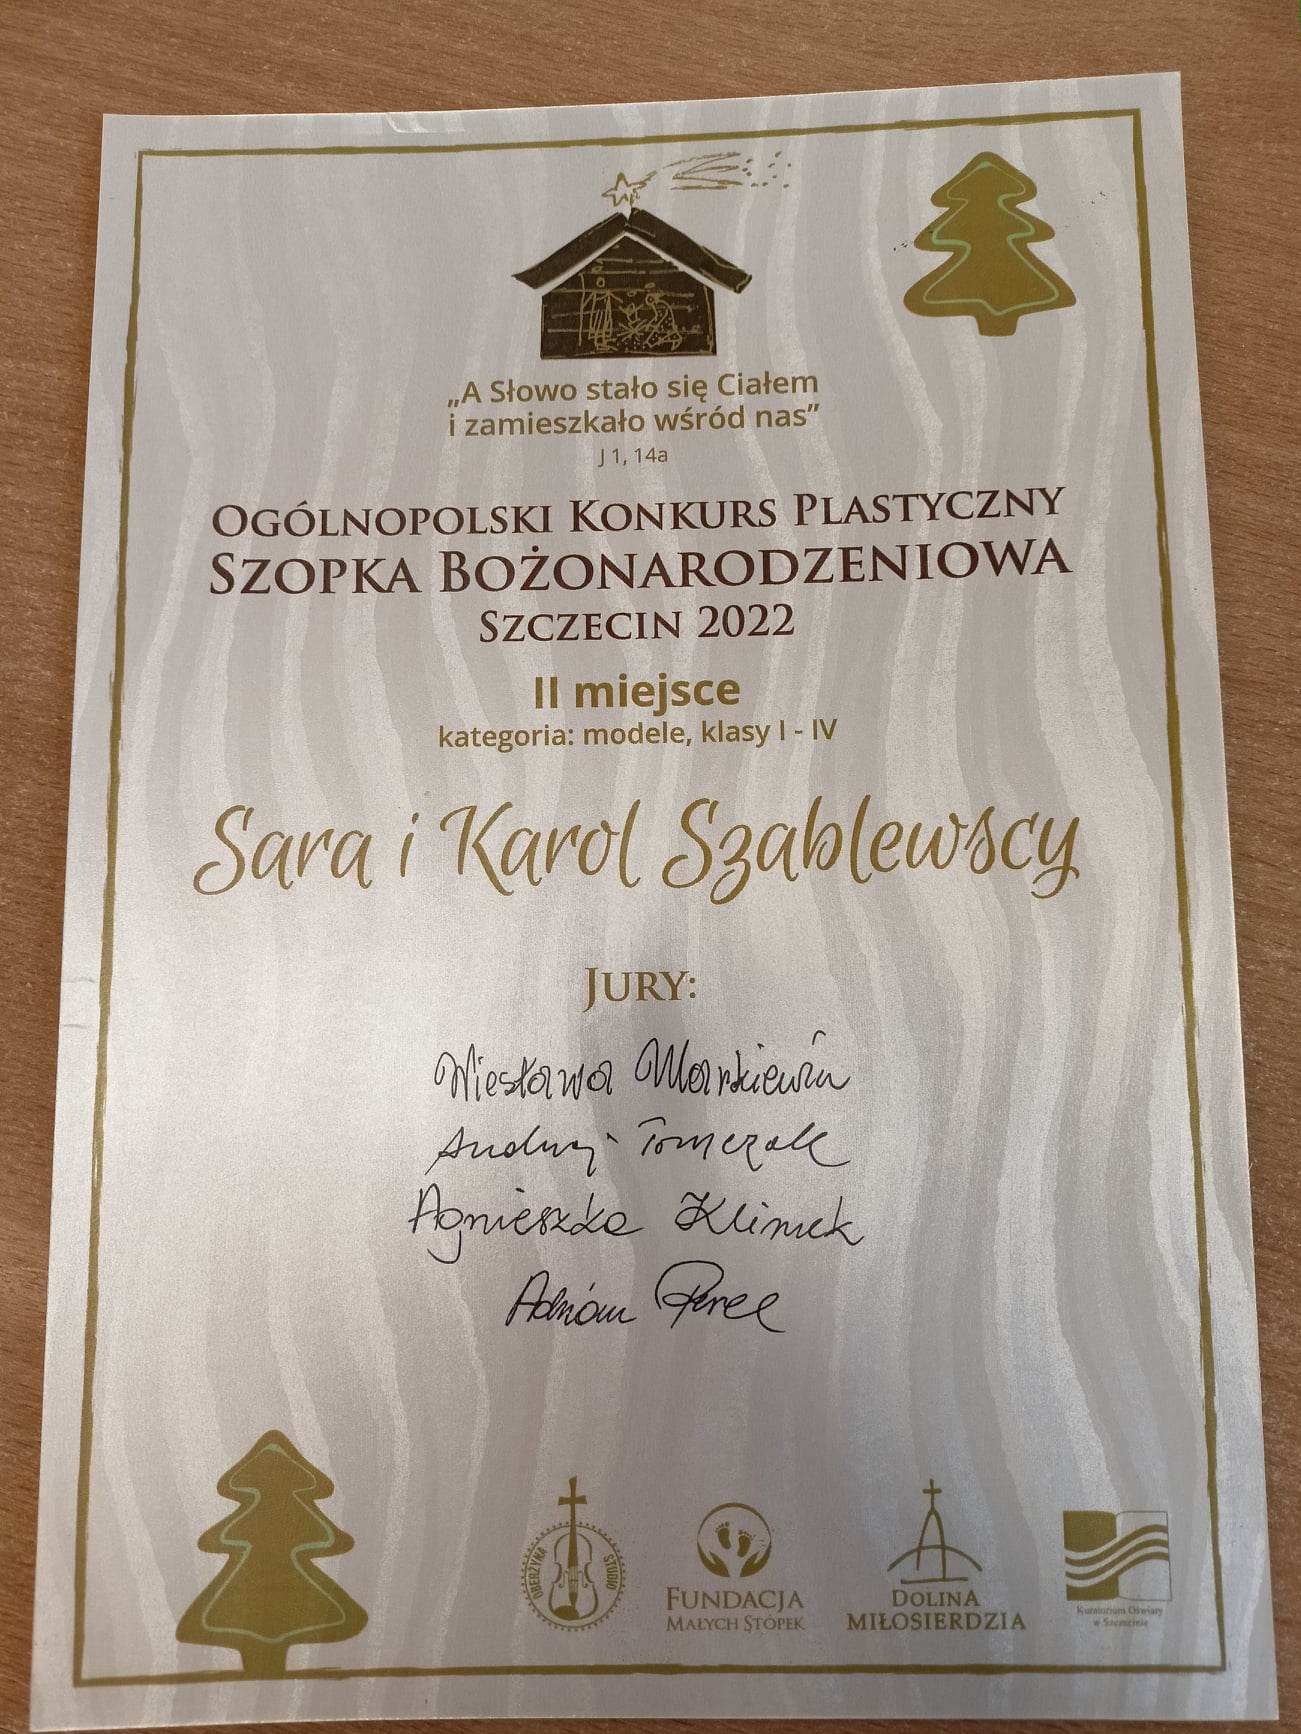 Dyplom dla Sary i Karola Szablewskich za zajęcie drugiego miejsca w konkursie "Szopka Bożonarodzeniowa"